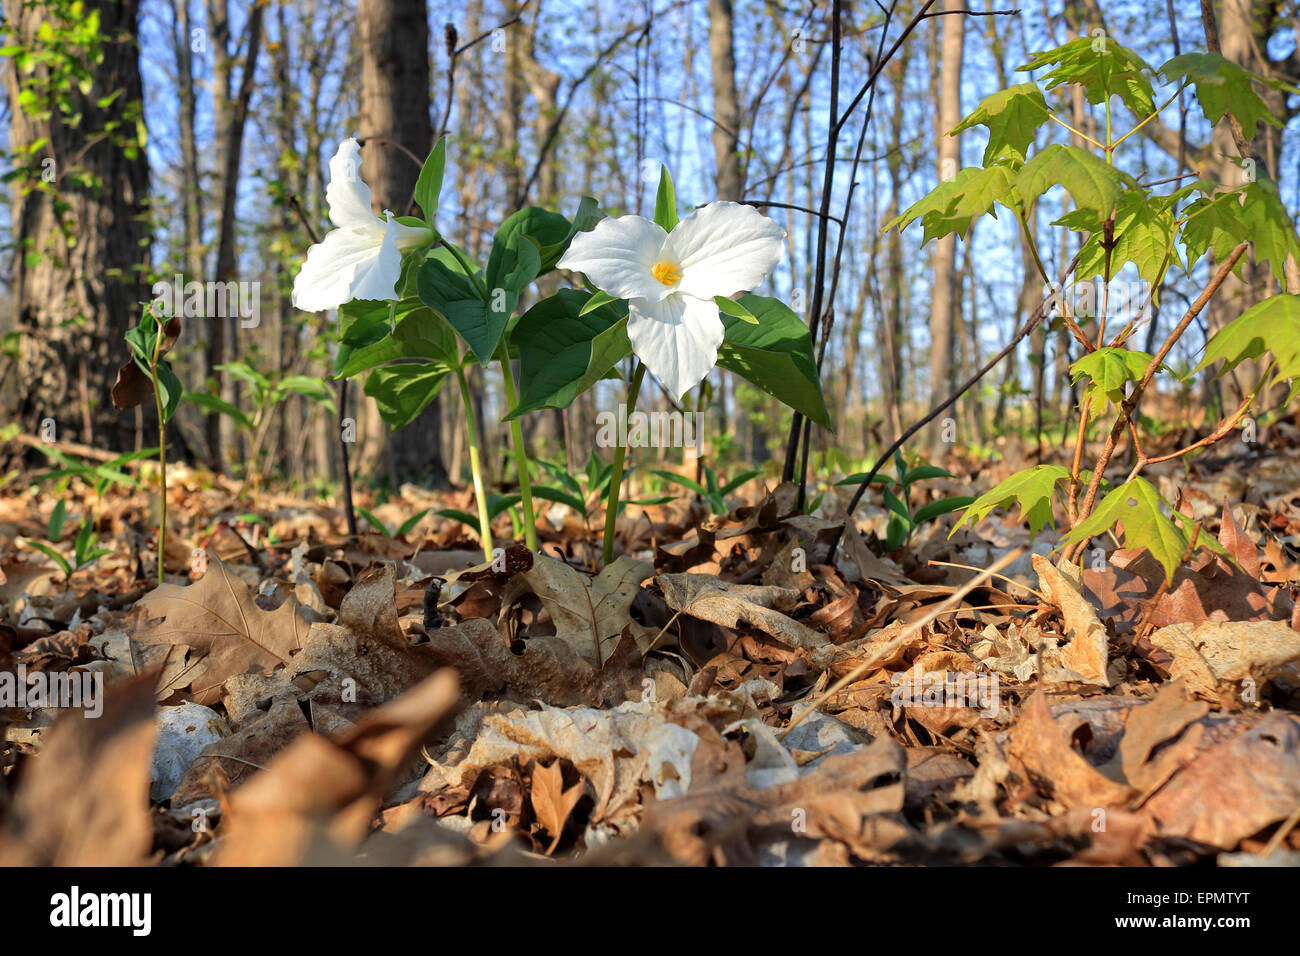 Trille blanc, en latin : Trillium grandiflorum, alias service Robin, sur la masse forestière dans les bois dans le parc provincial Bronte Creek. Whi Banque D'Images